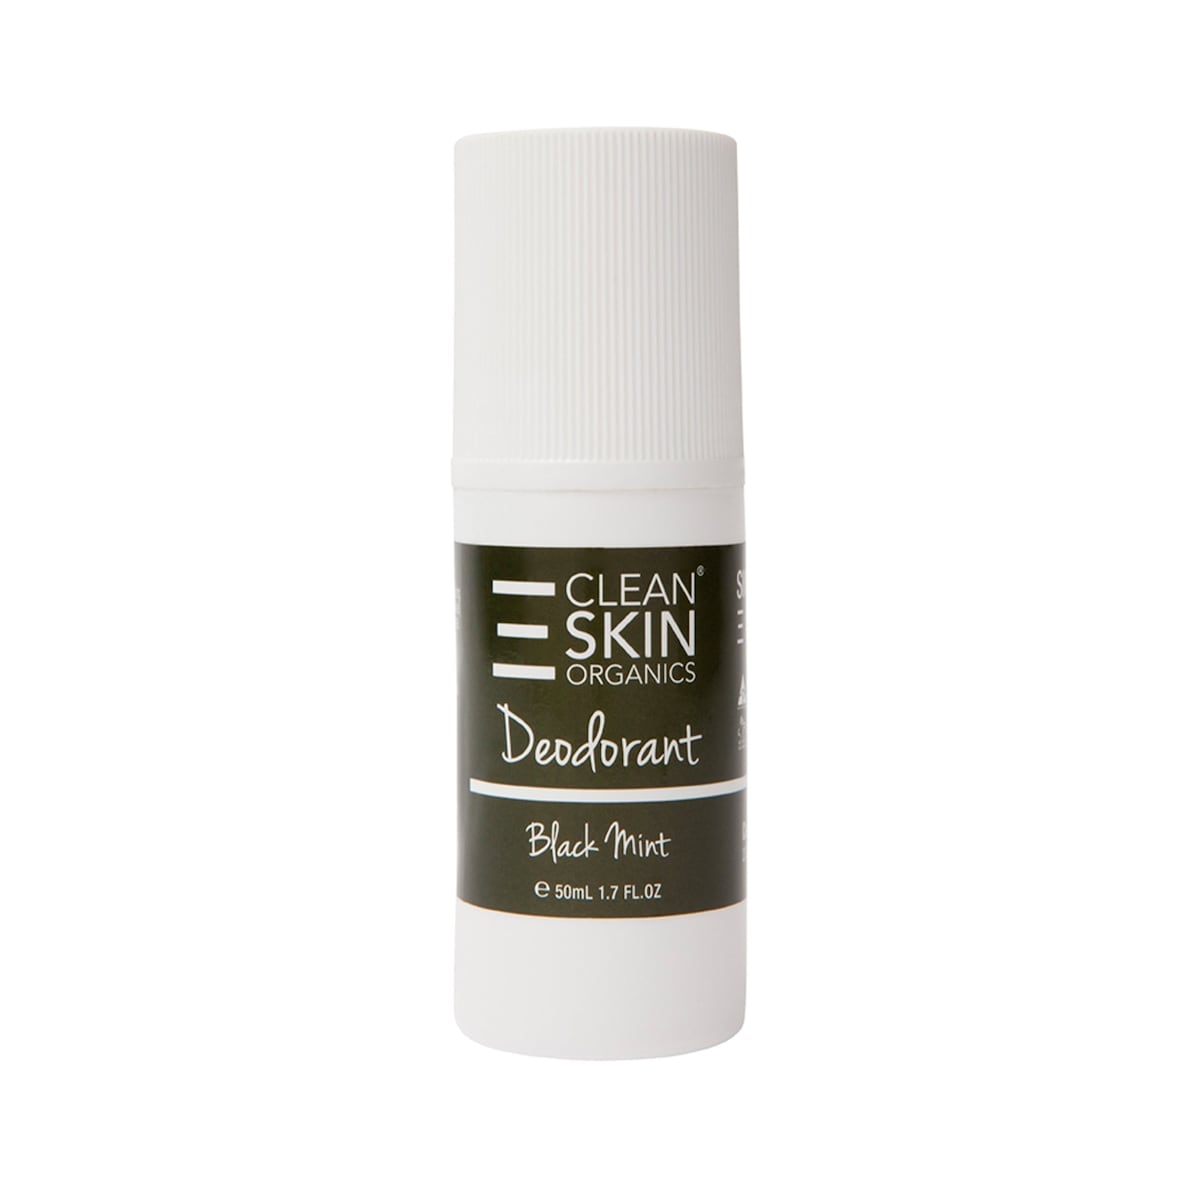 Clean Skin Organics Deodorant Black Mint 50ml